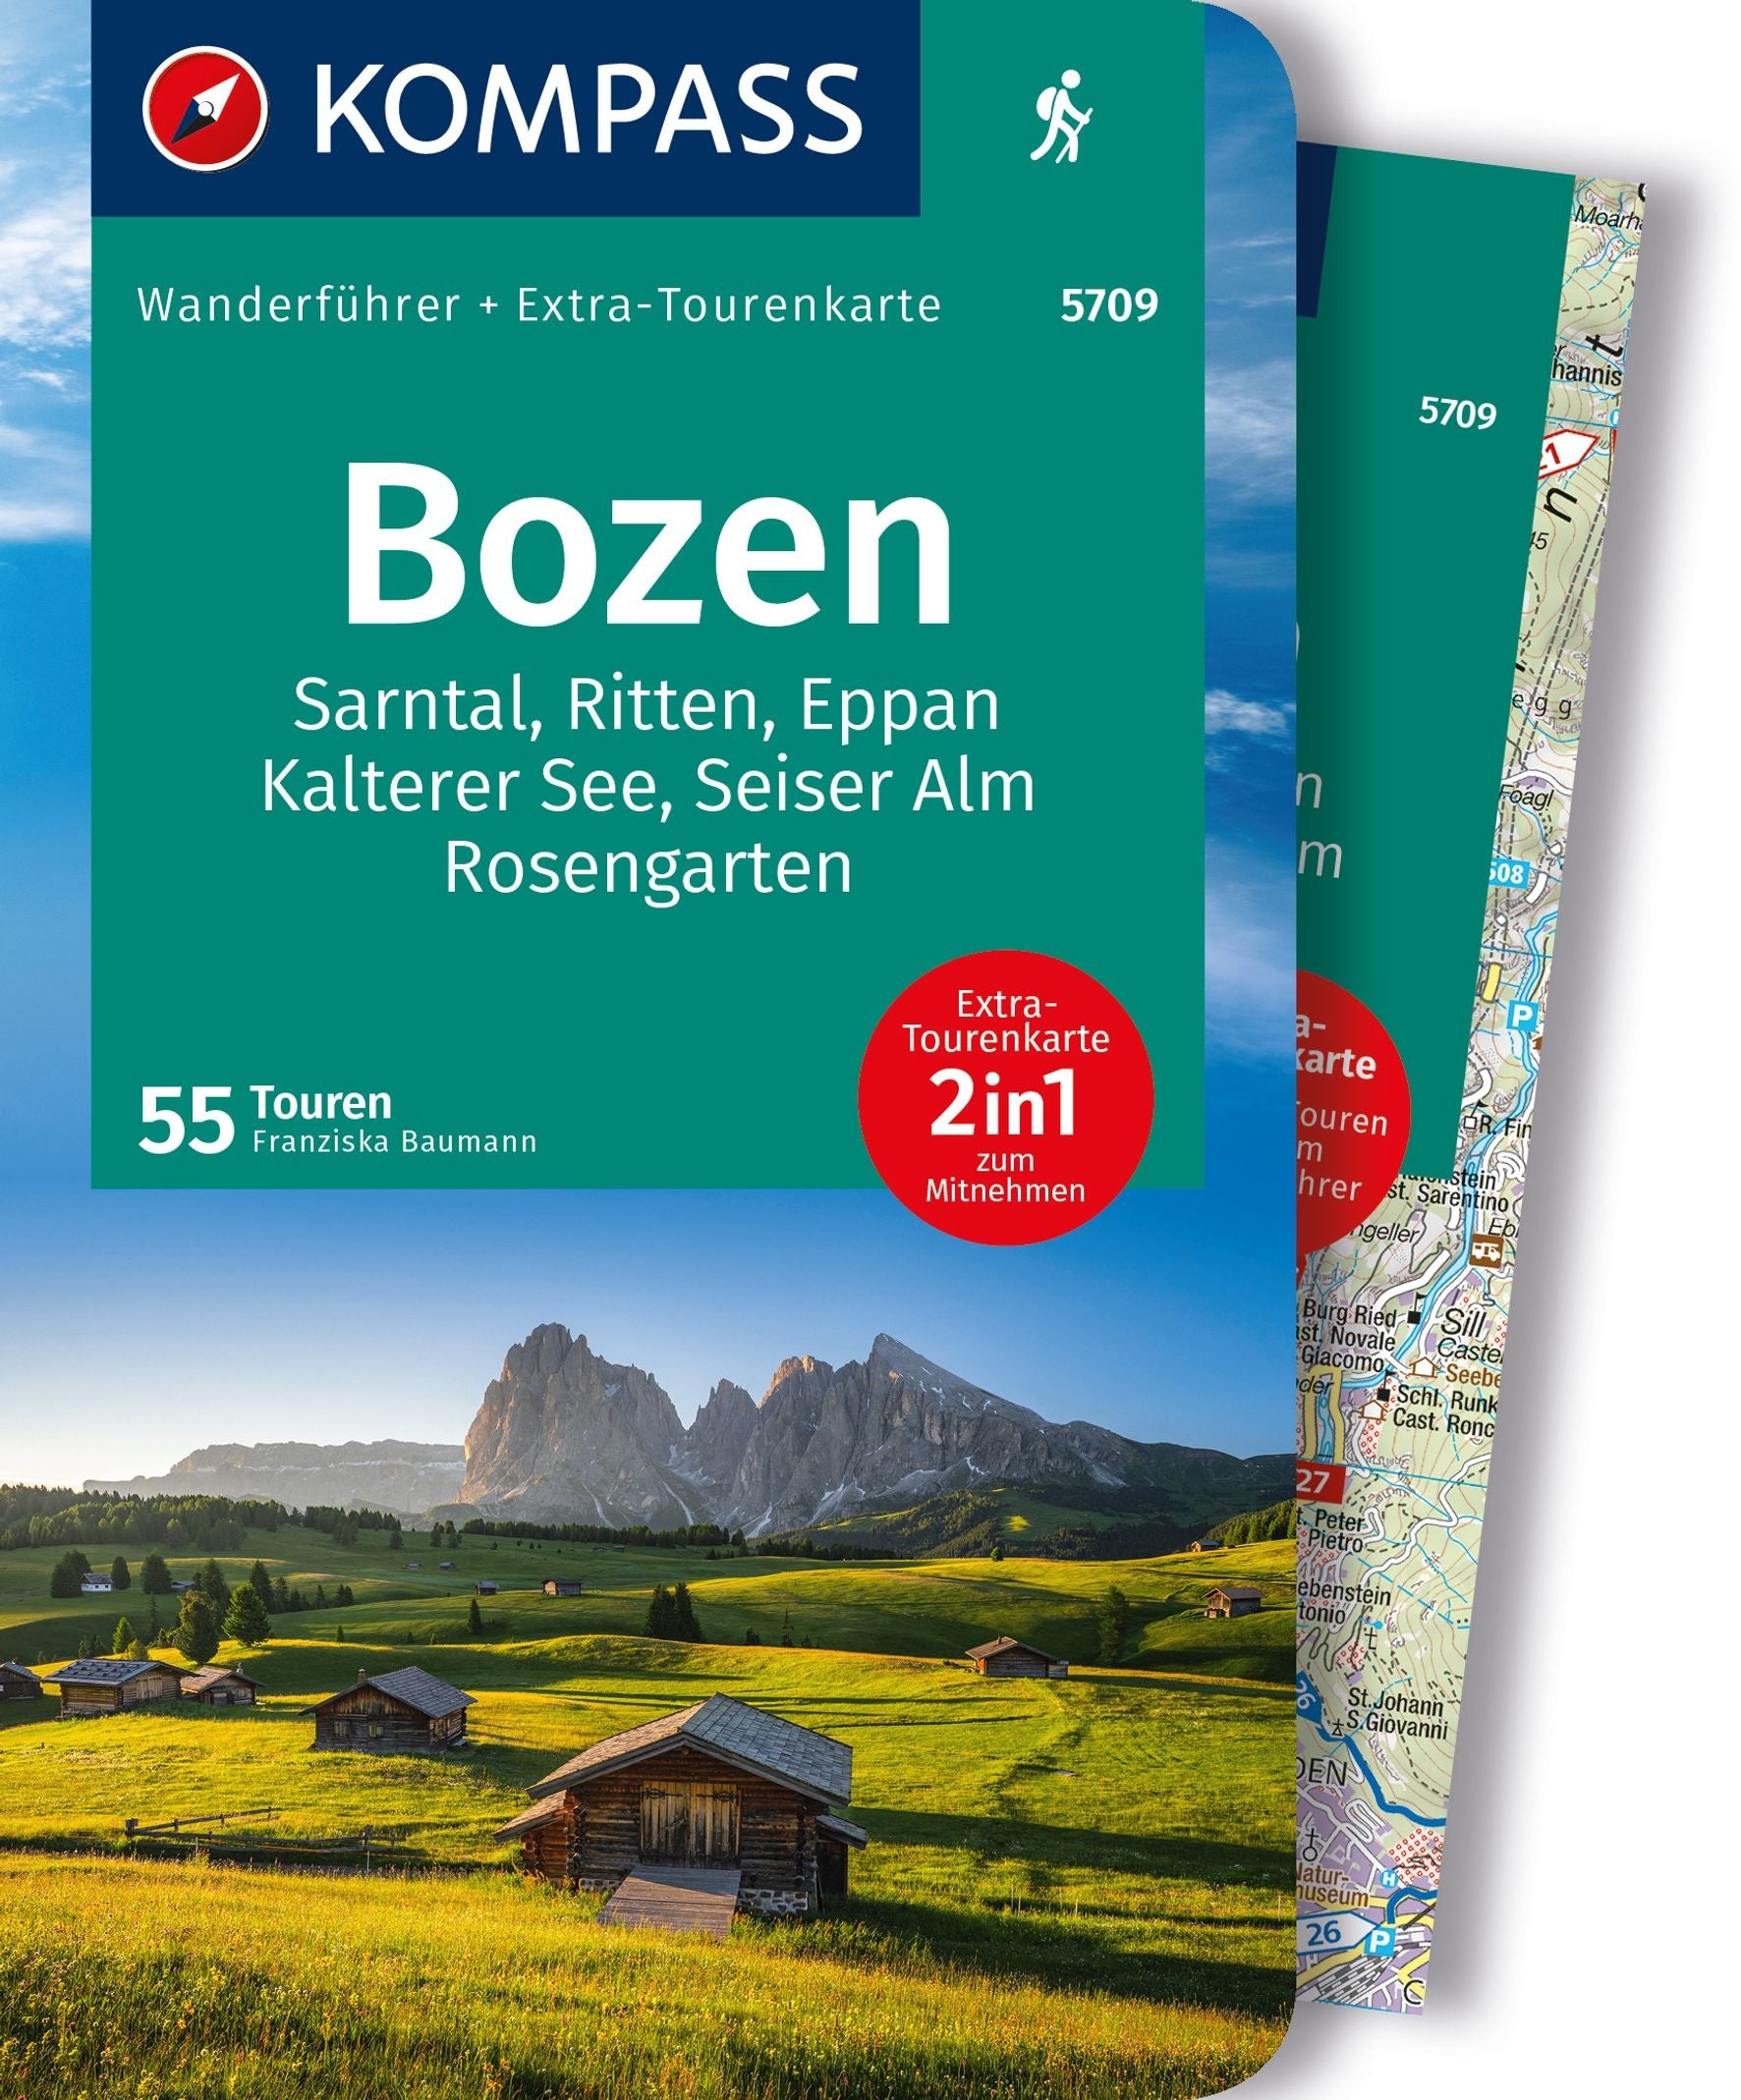 Bozen, Sarntal, Ritten, Eppan, Kalterer See, Seiser Alm - KOMPASS Wanderführer